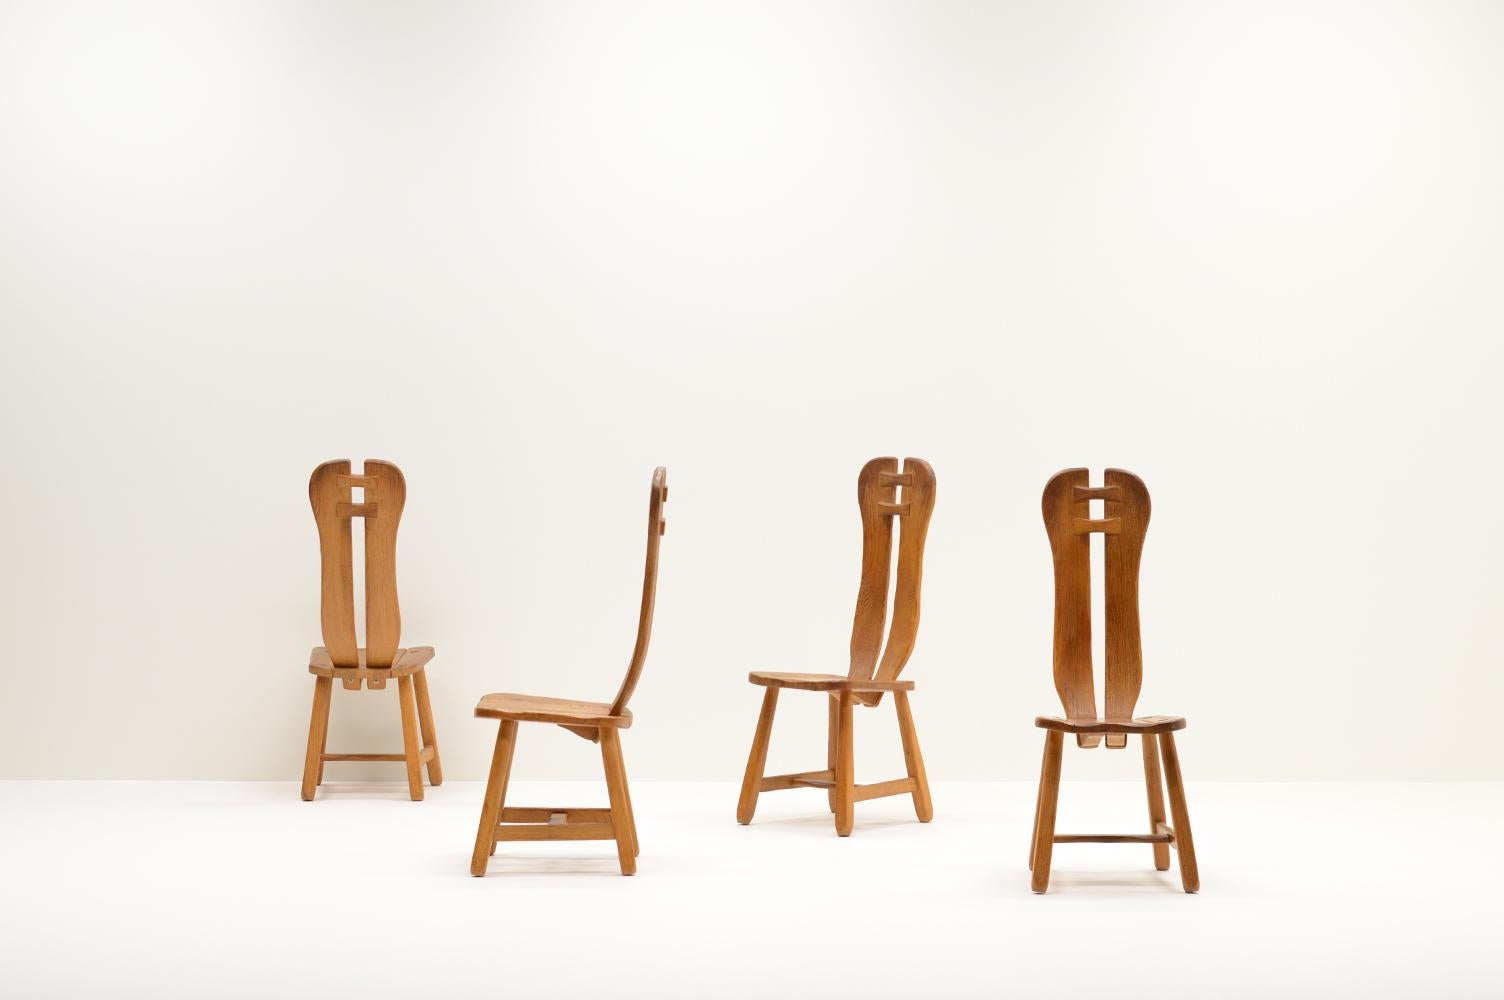 Ensemble de 4 chaises de salle à manger brutales en chêne fabriquées par Kunstmeubelen de Puydt, Belgique, années 1970. Les chaises sont fabriquées en chêne massif. En bon état vintage. Le prix est pour le lot de 4. 

Demandez un devis pour obtenir